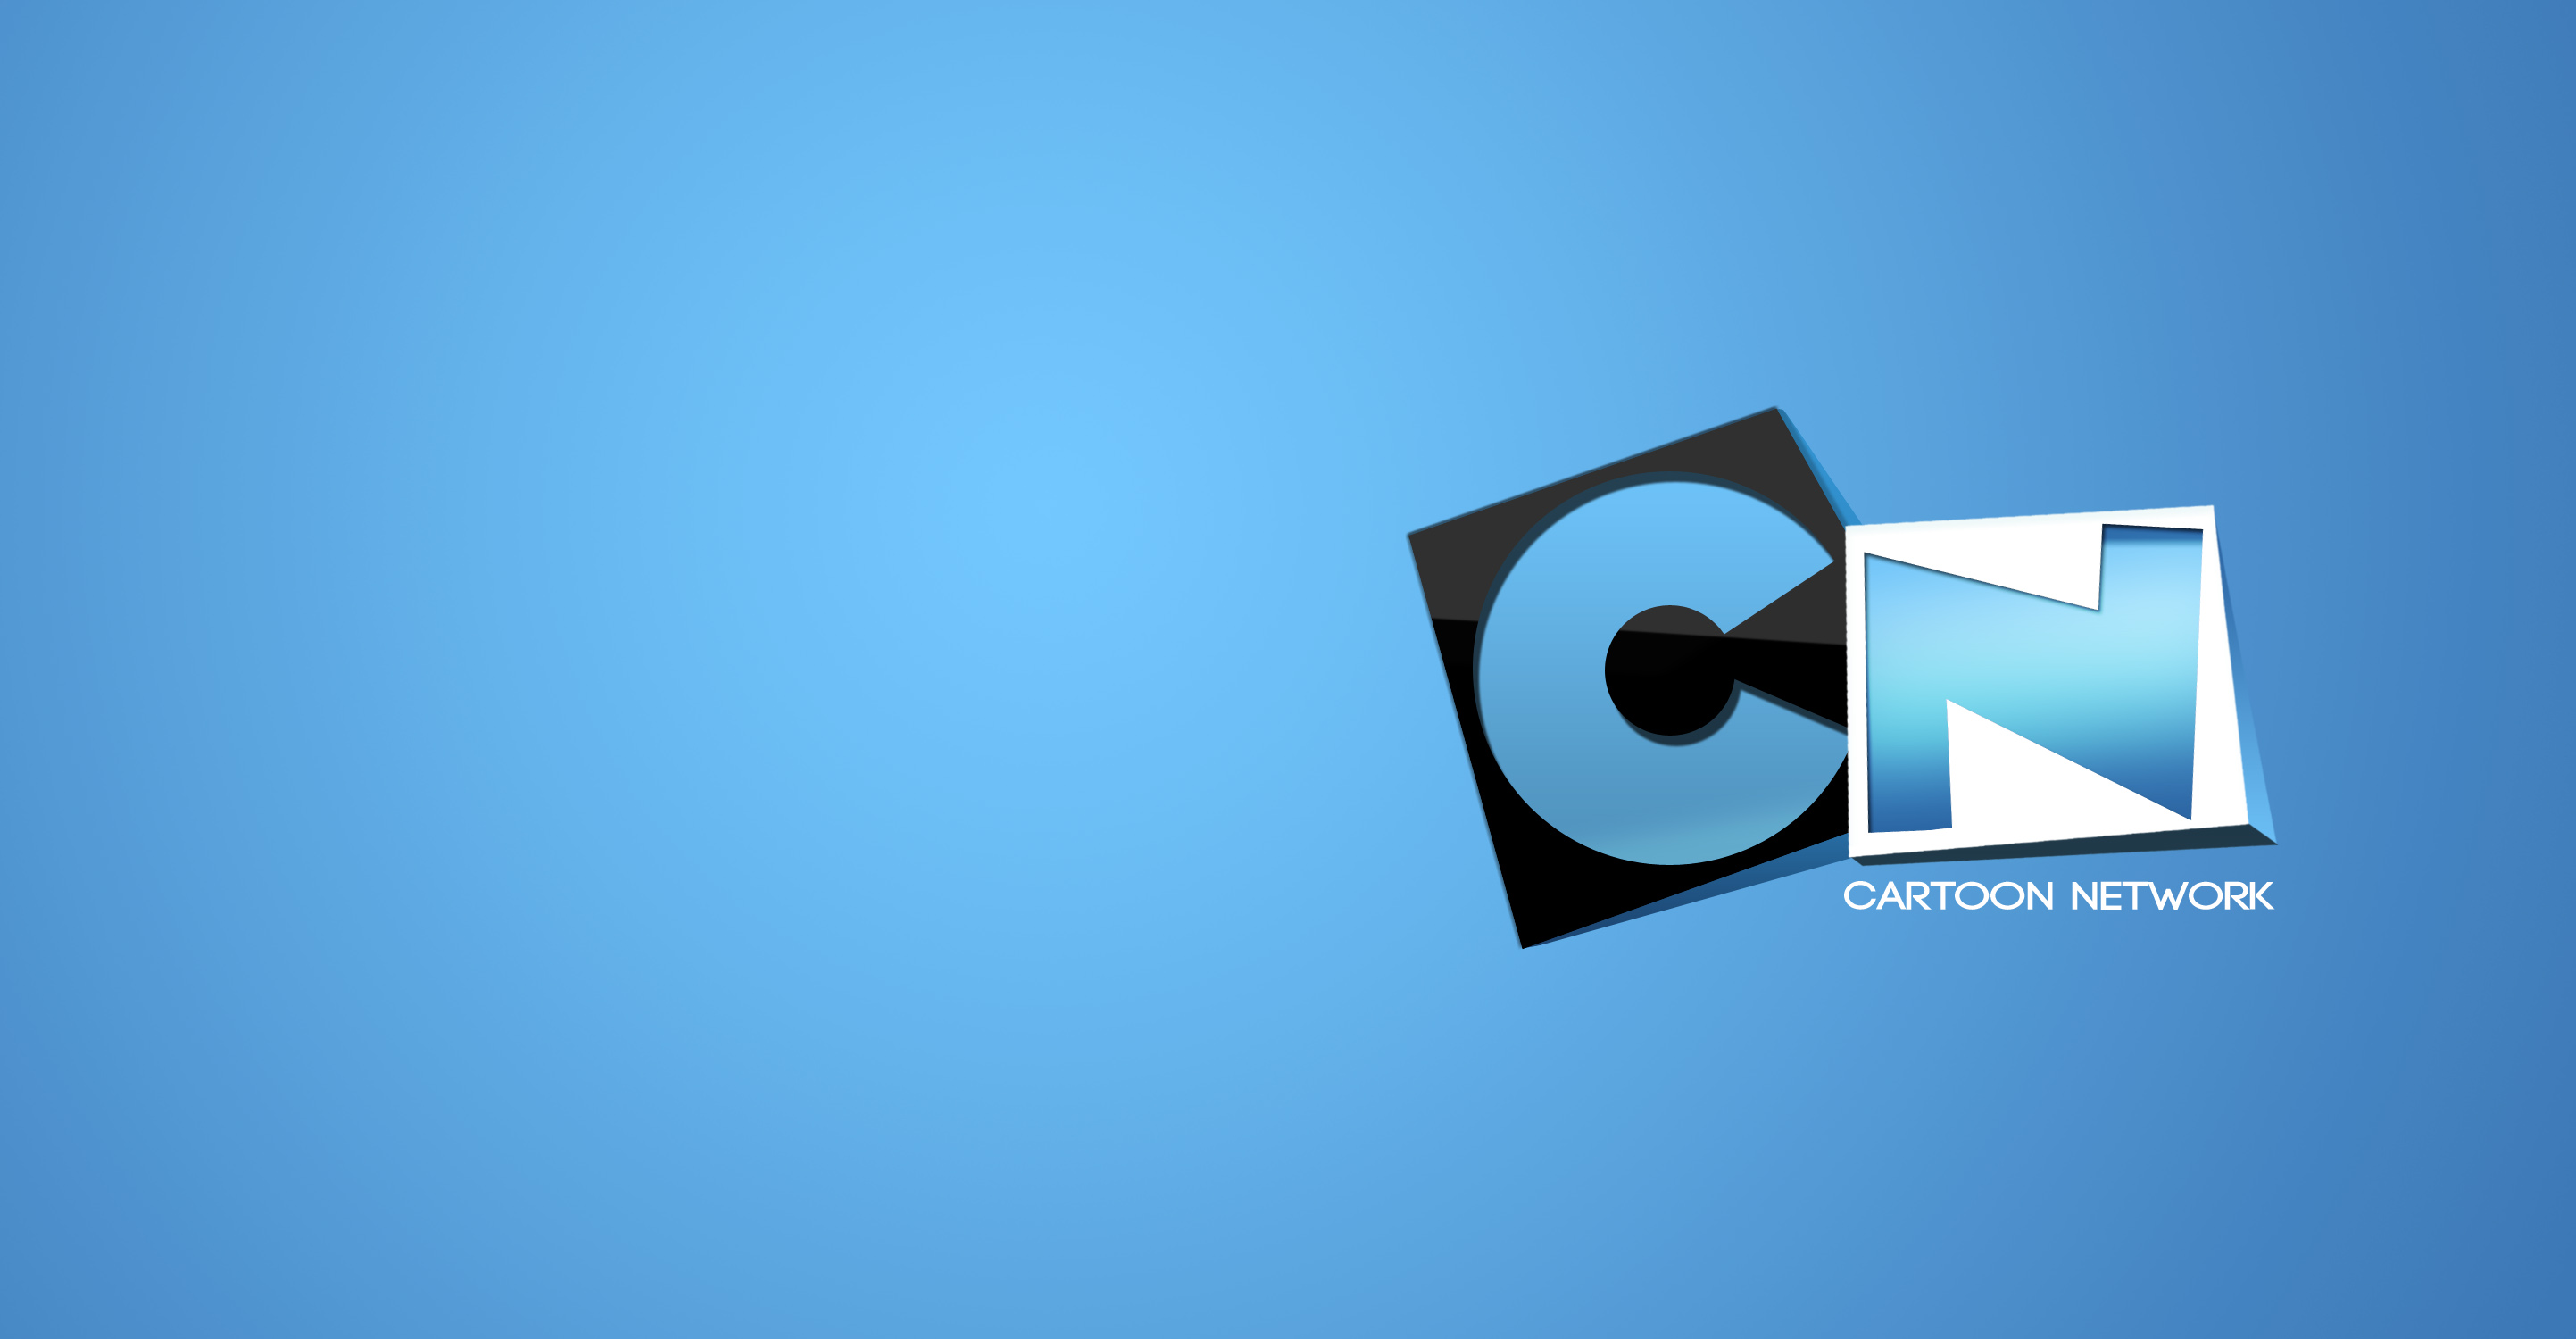 Cartoon Network Logo cartoon network logo wallpaper Logo Database